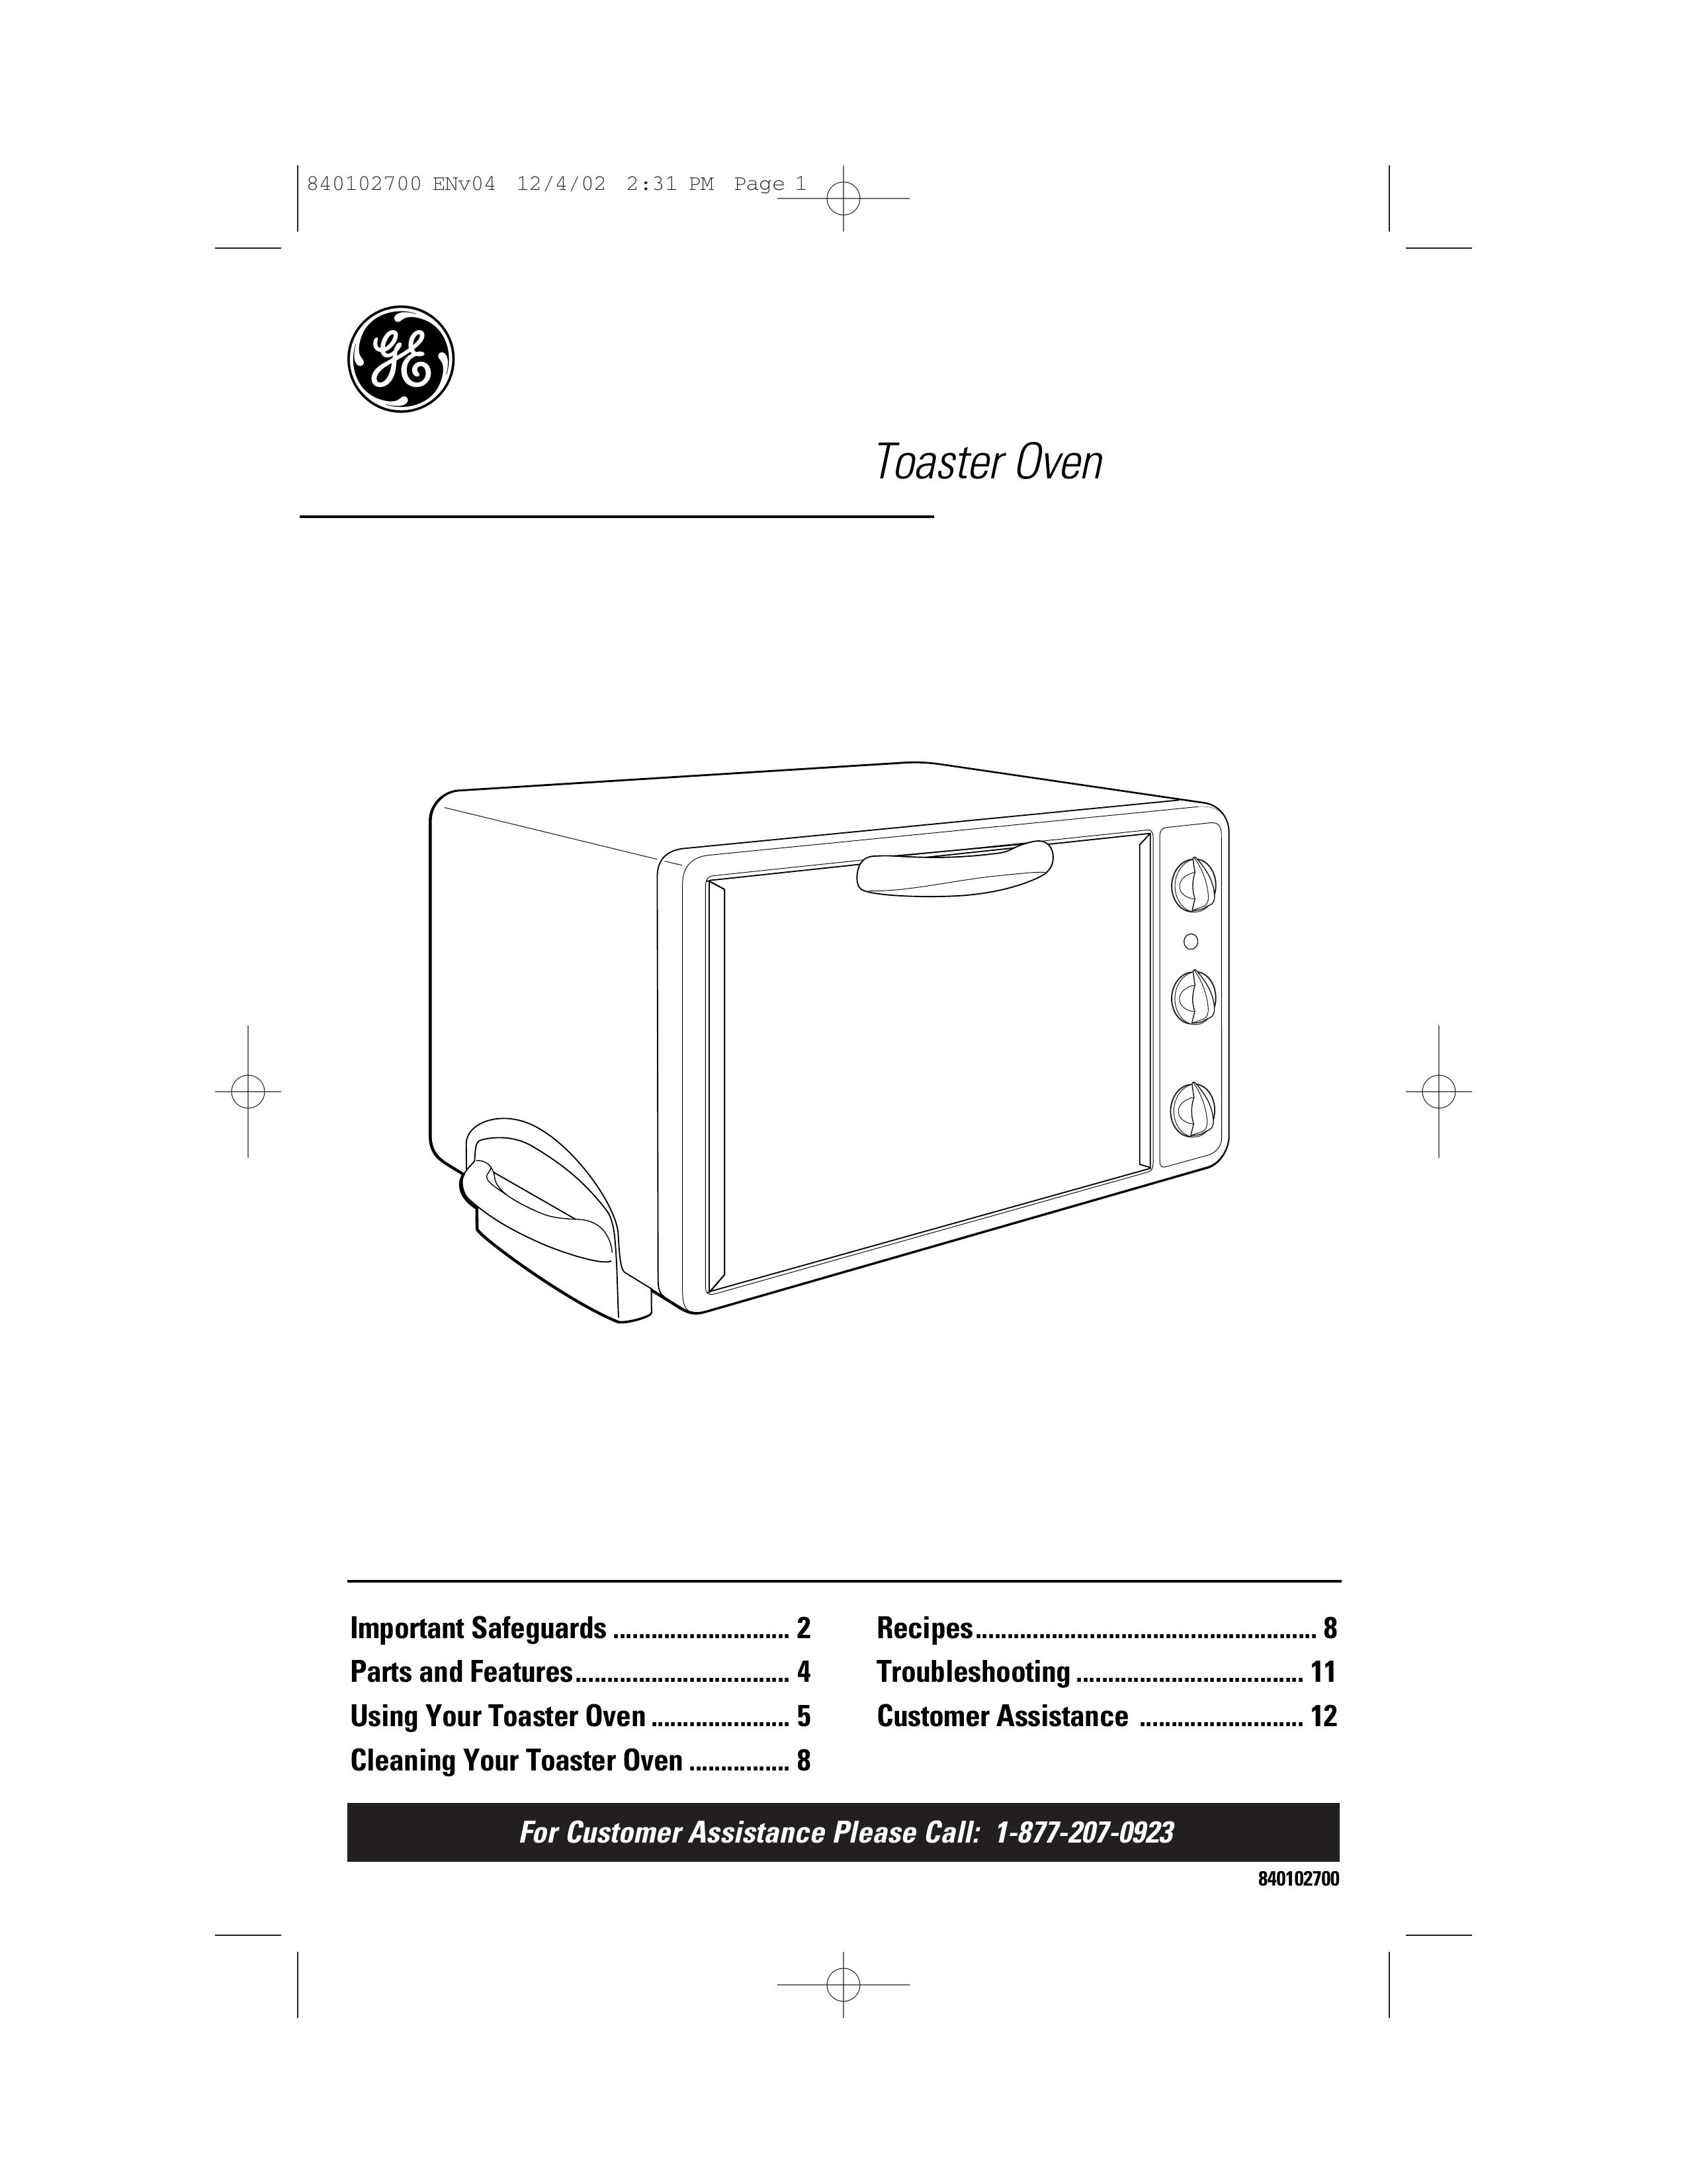 GE 840102700 Toaster User Manual